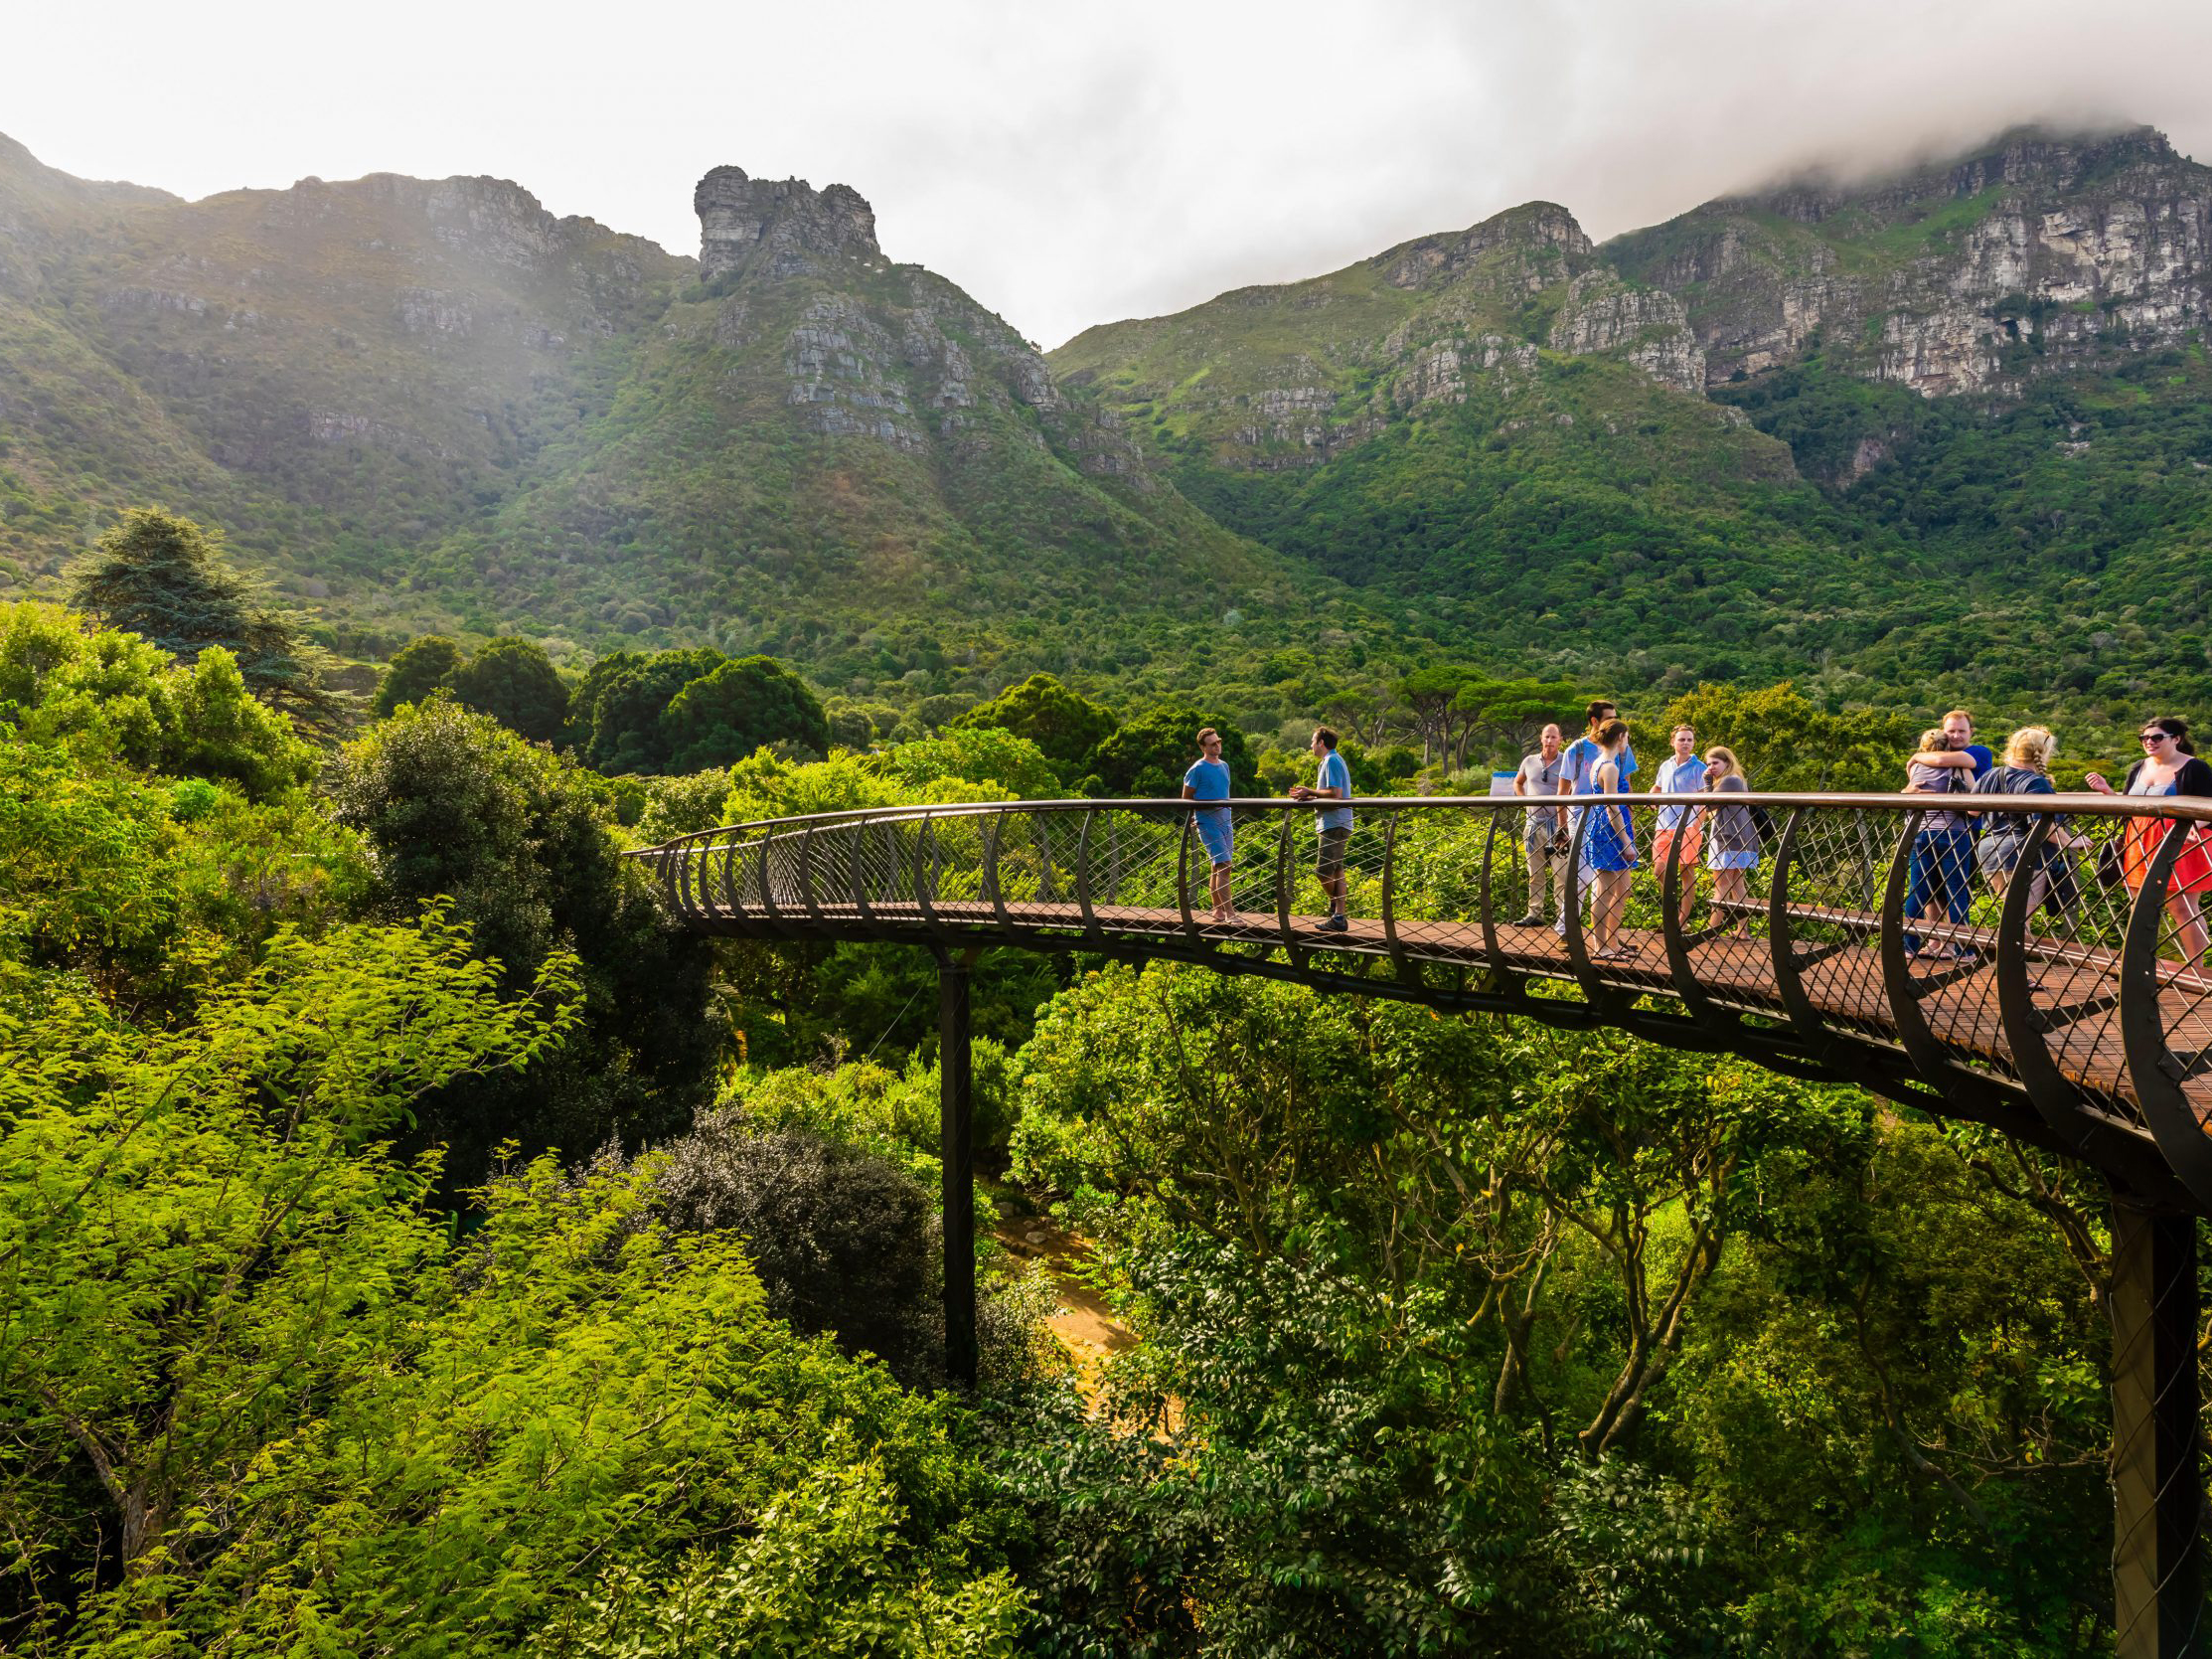 حدائق شتوية حول العالم - حديقة كريستينبوش النباتية الوطنية، جنوب أفريقيا